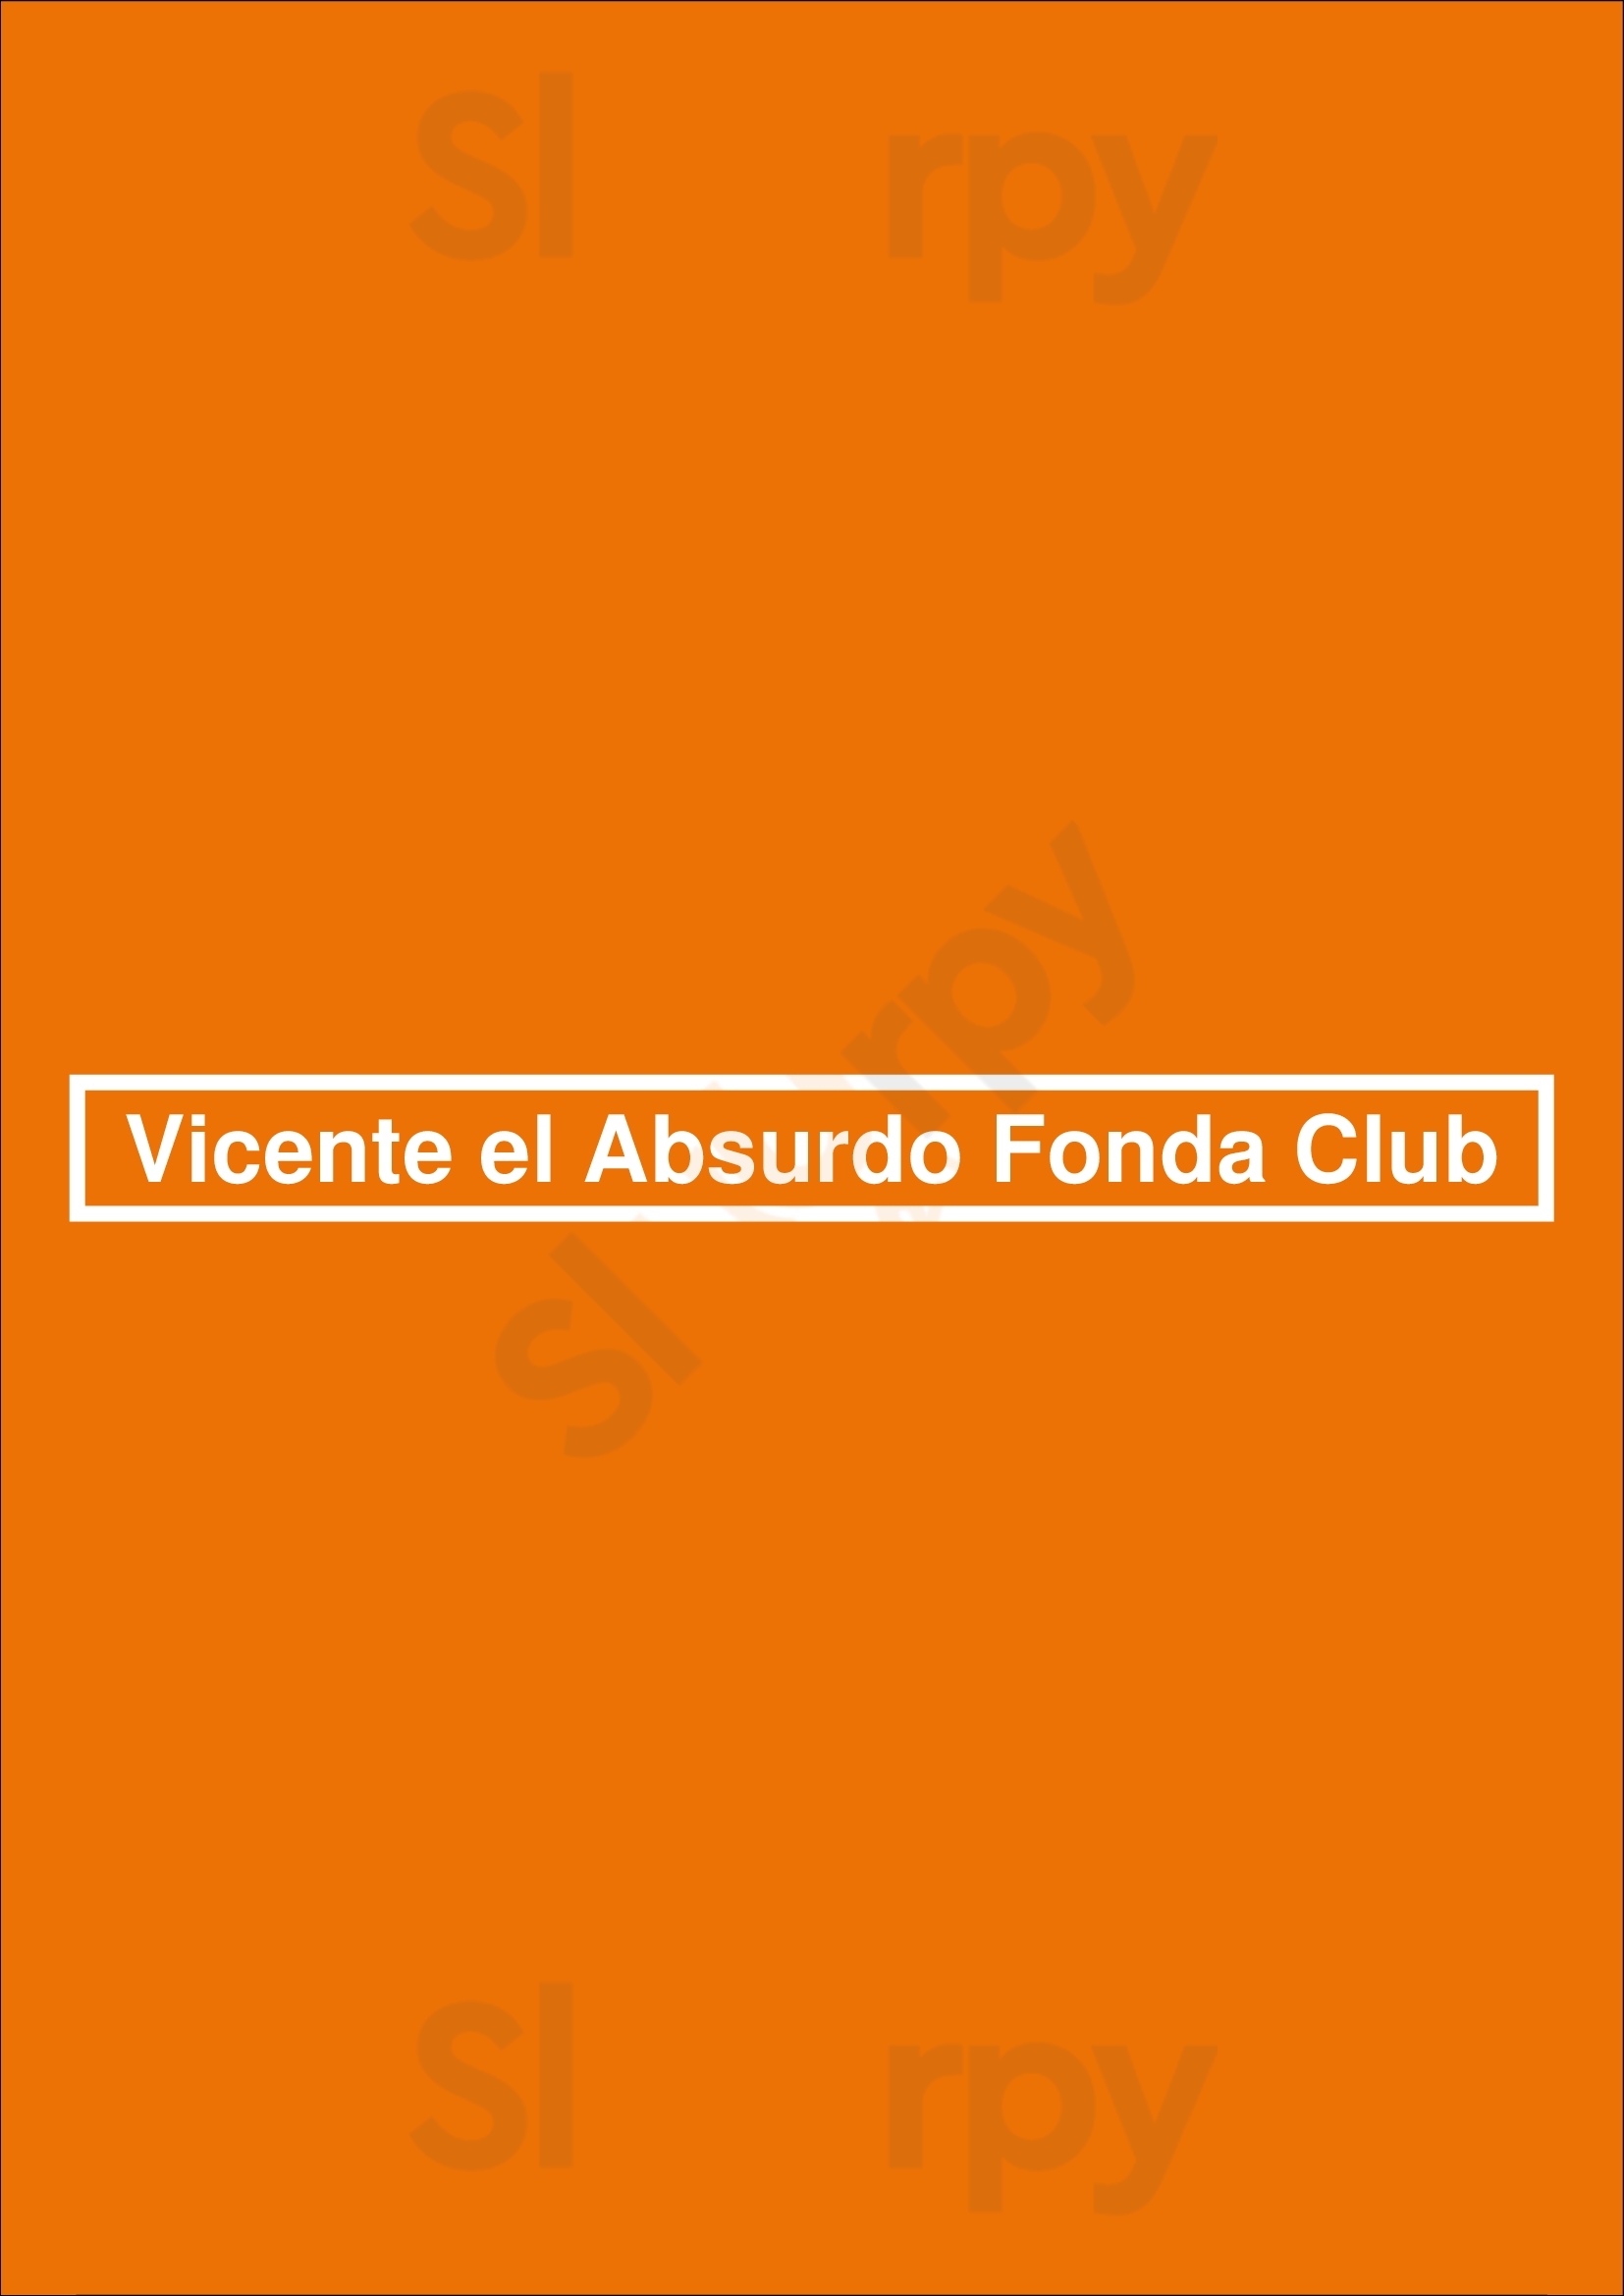 Vicente El Absurdo Fonda Club Buenos Aires Menu - 1